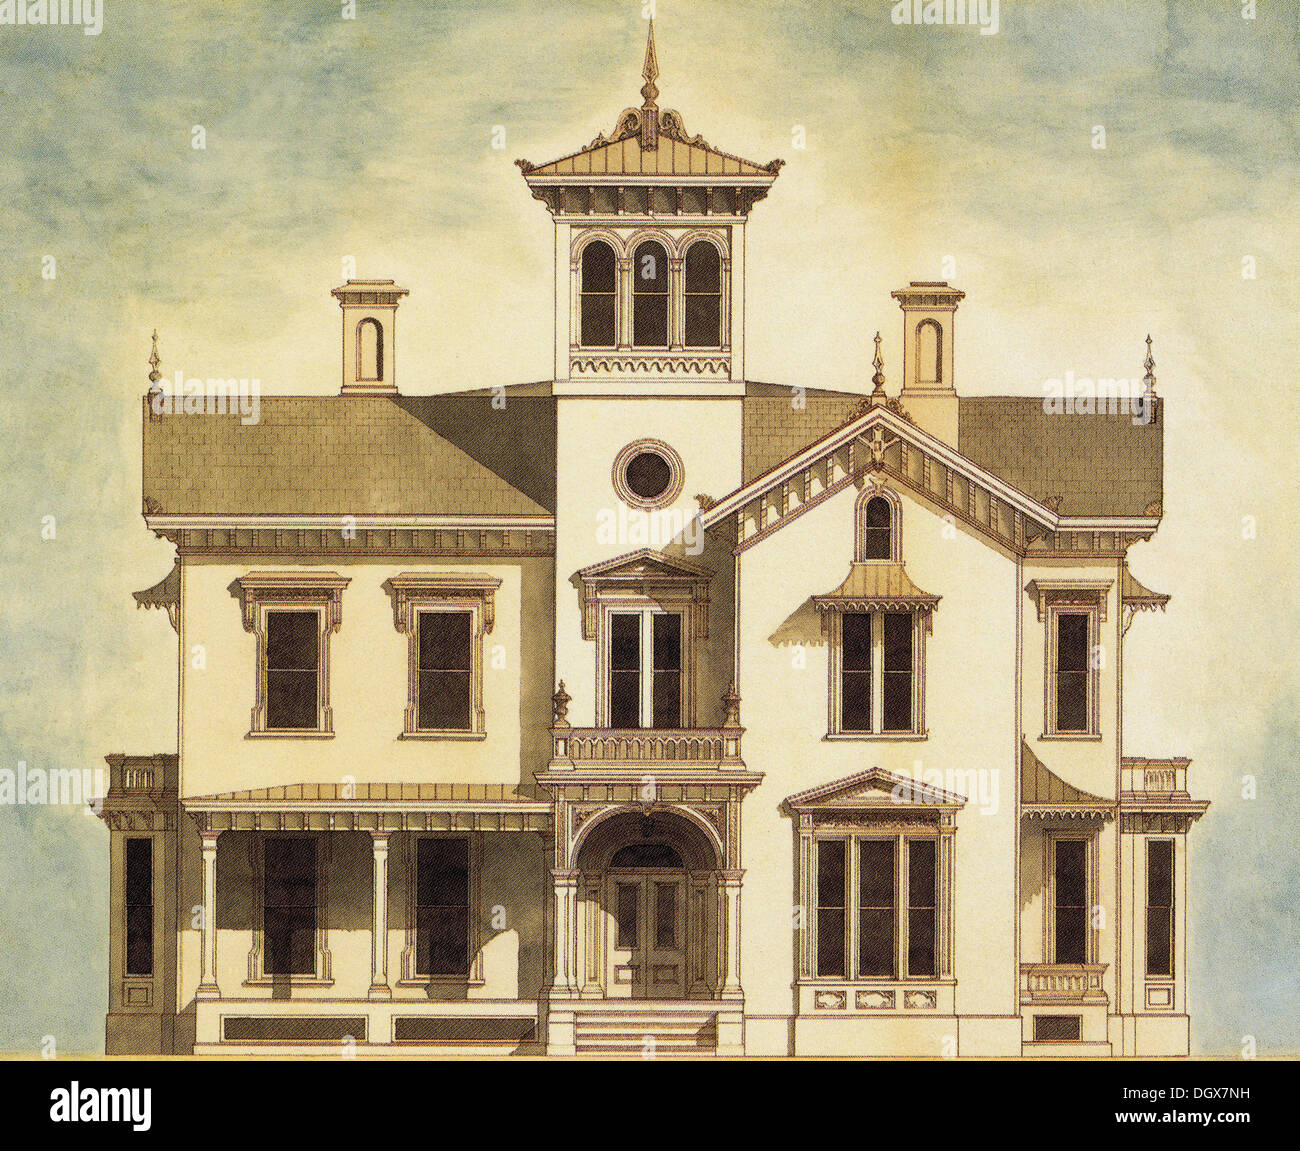 Plan de maison historique, New Hampshire, USA, 1868 Banque D'Images